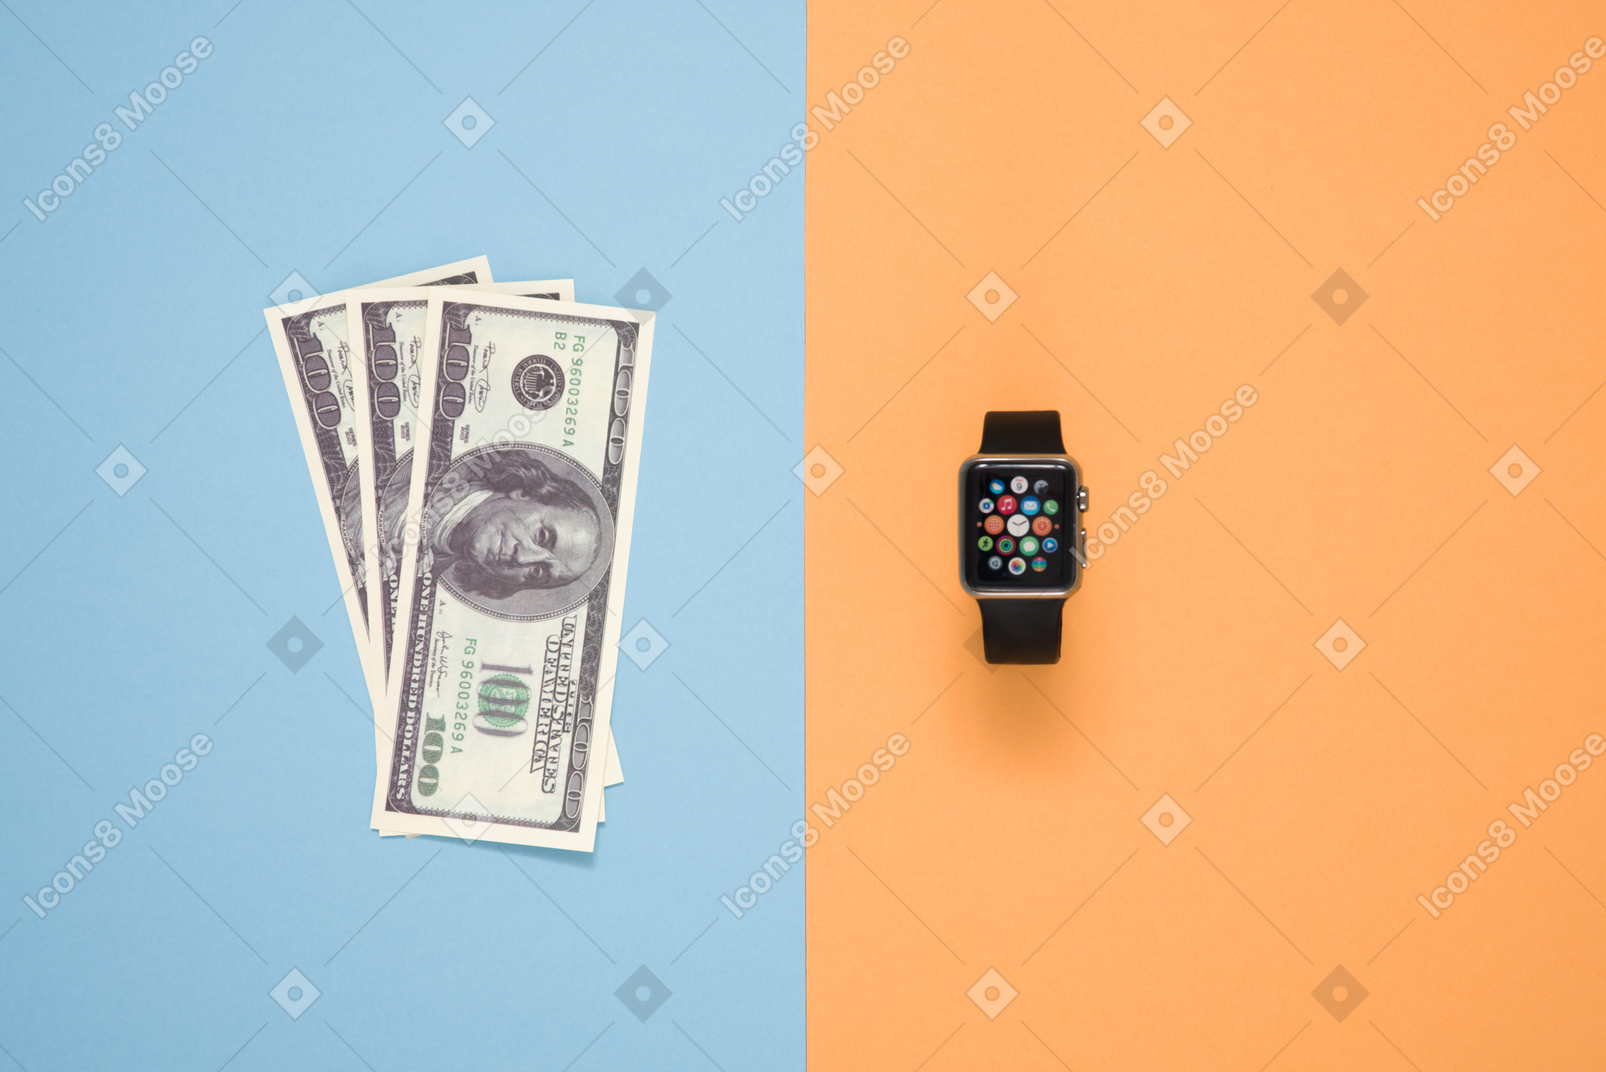 Стоит ли покупать умные часы